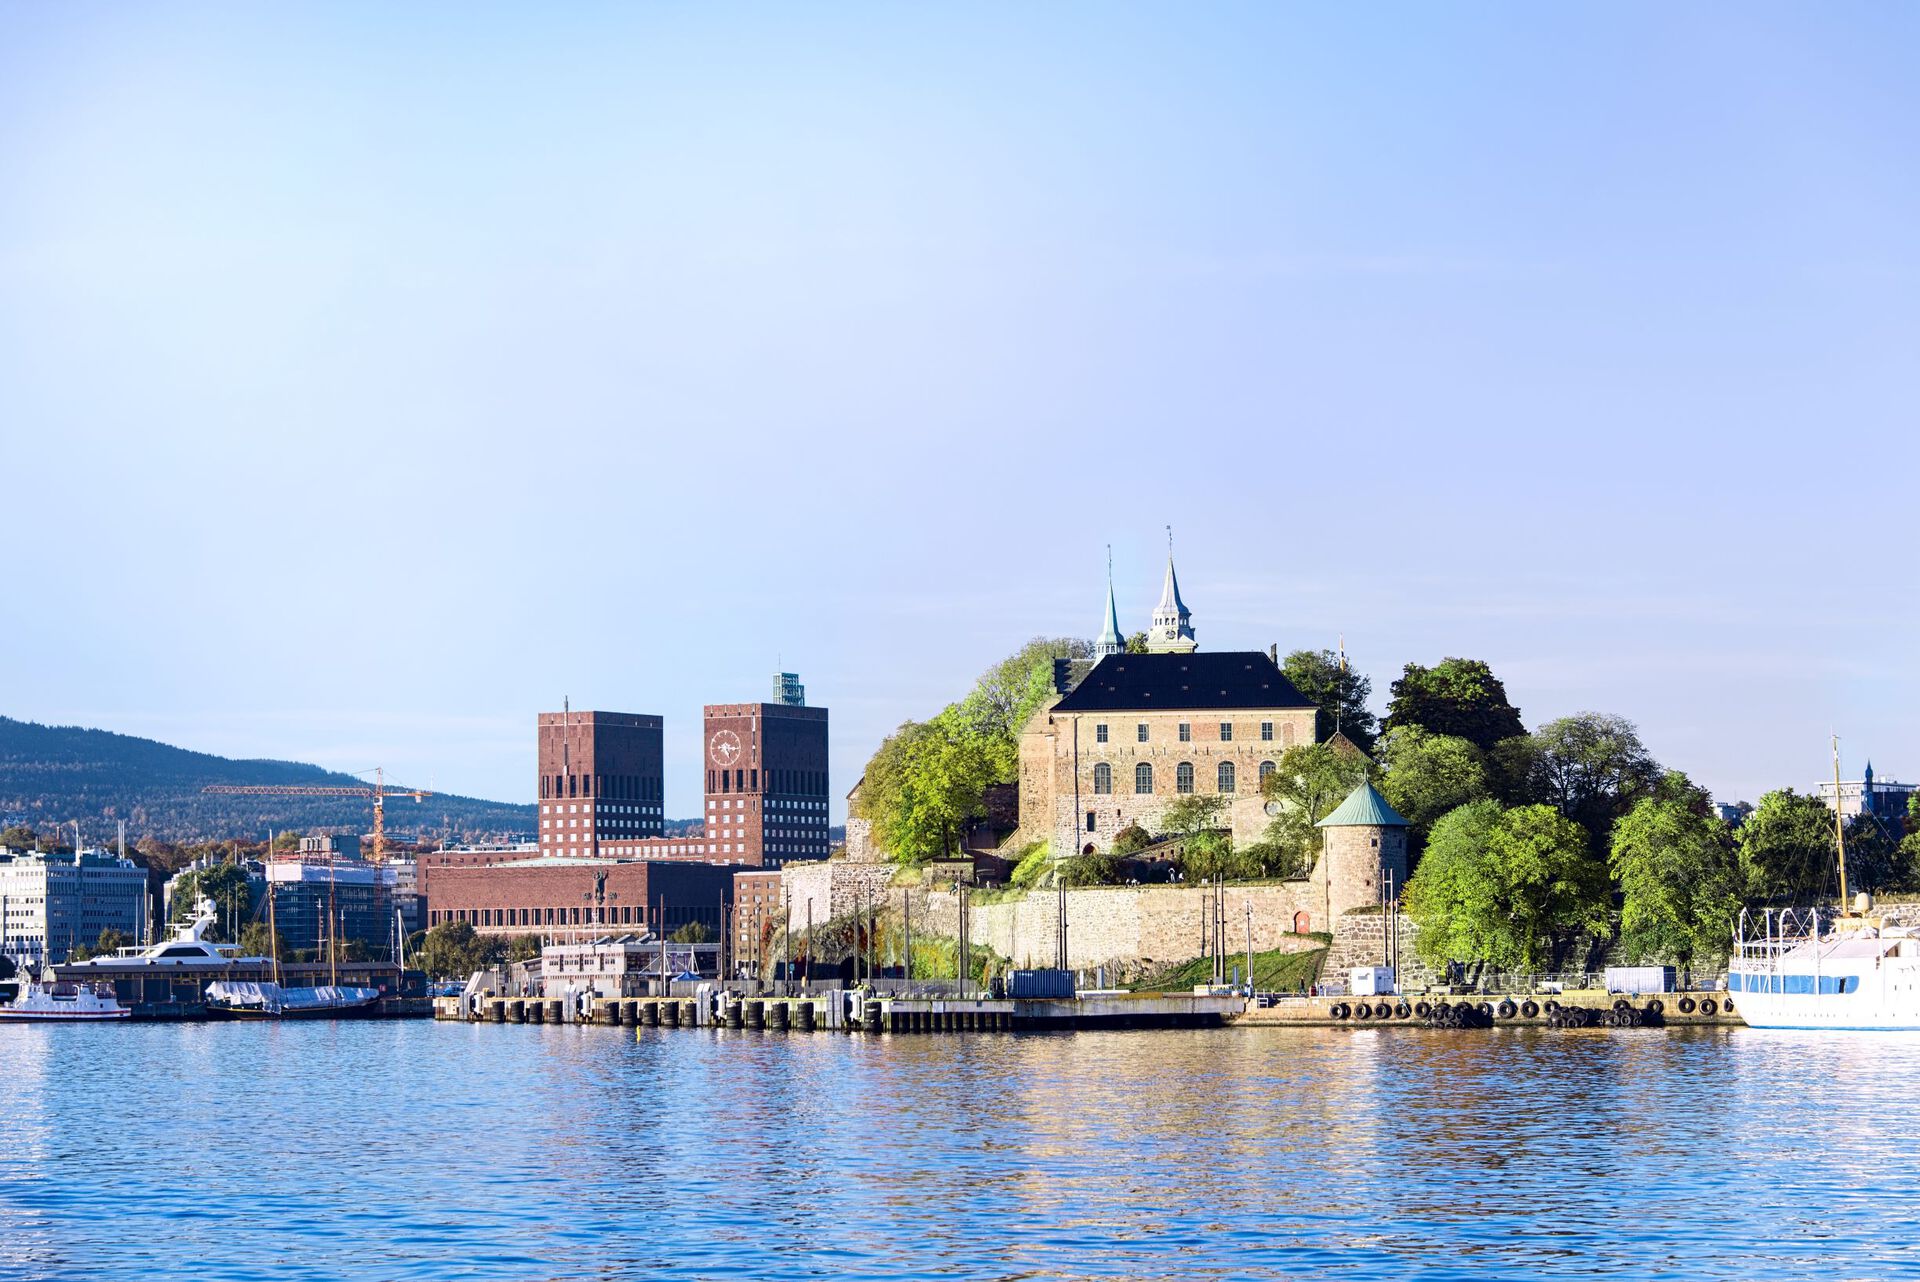 Oslo rådhus, akershusfestning